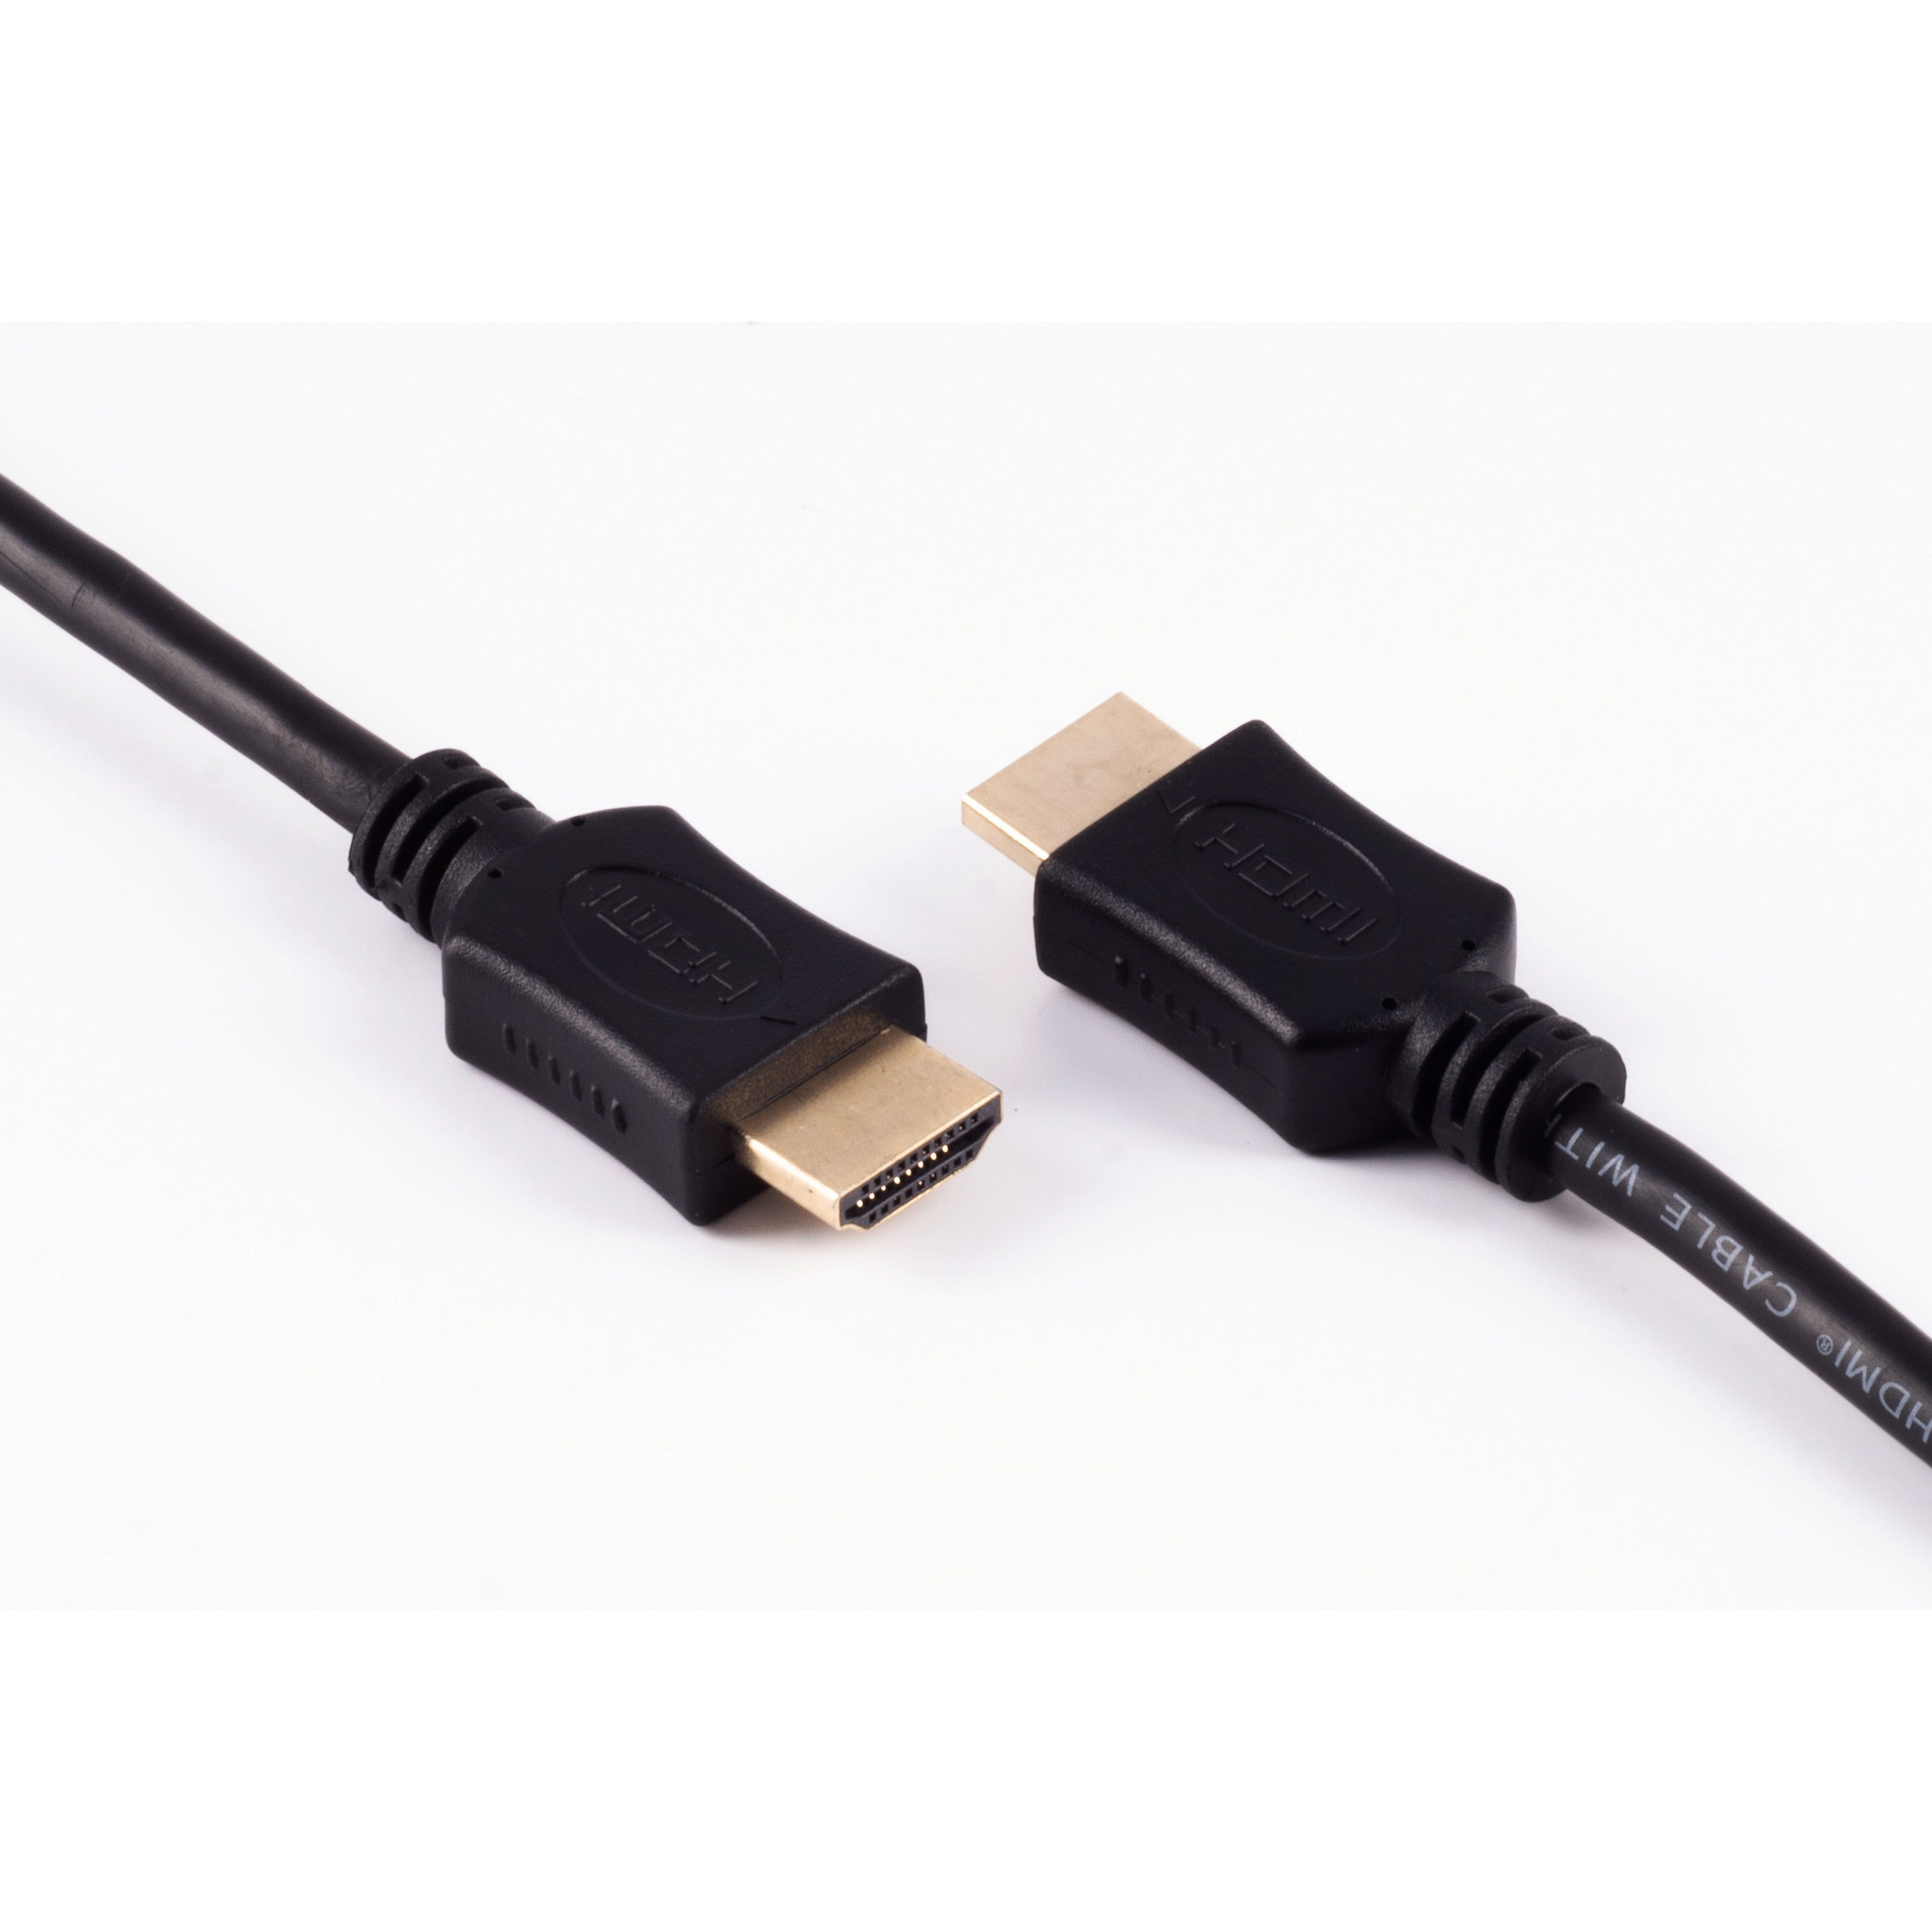 A-Stecker 10m SHIVERPEAKS Kabel HDMI / A-Stecker HDMI HDMI verg. HEAC